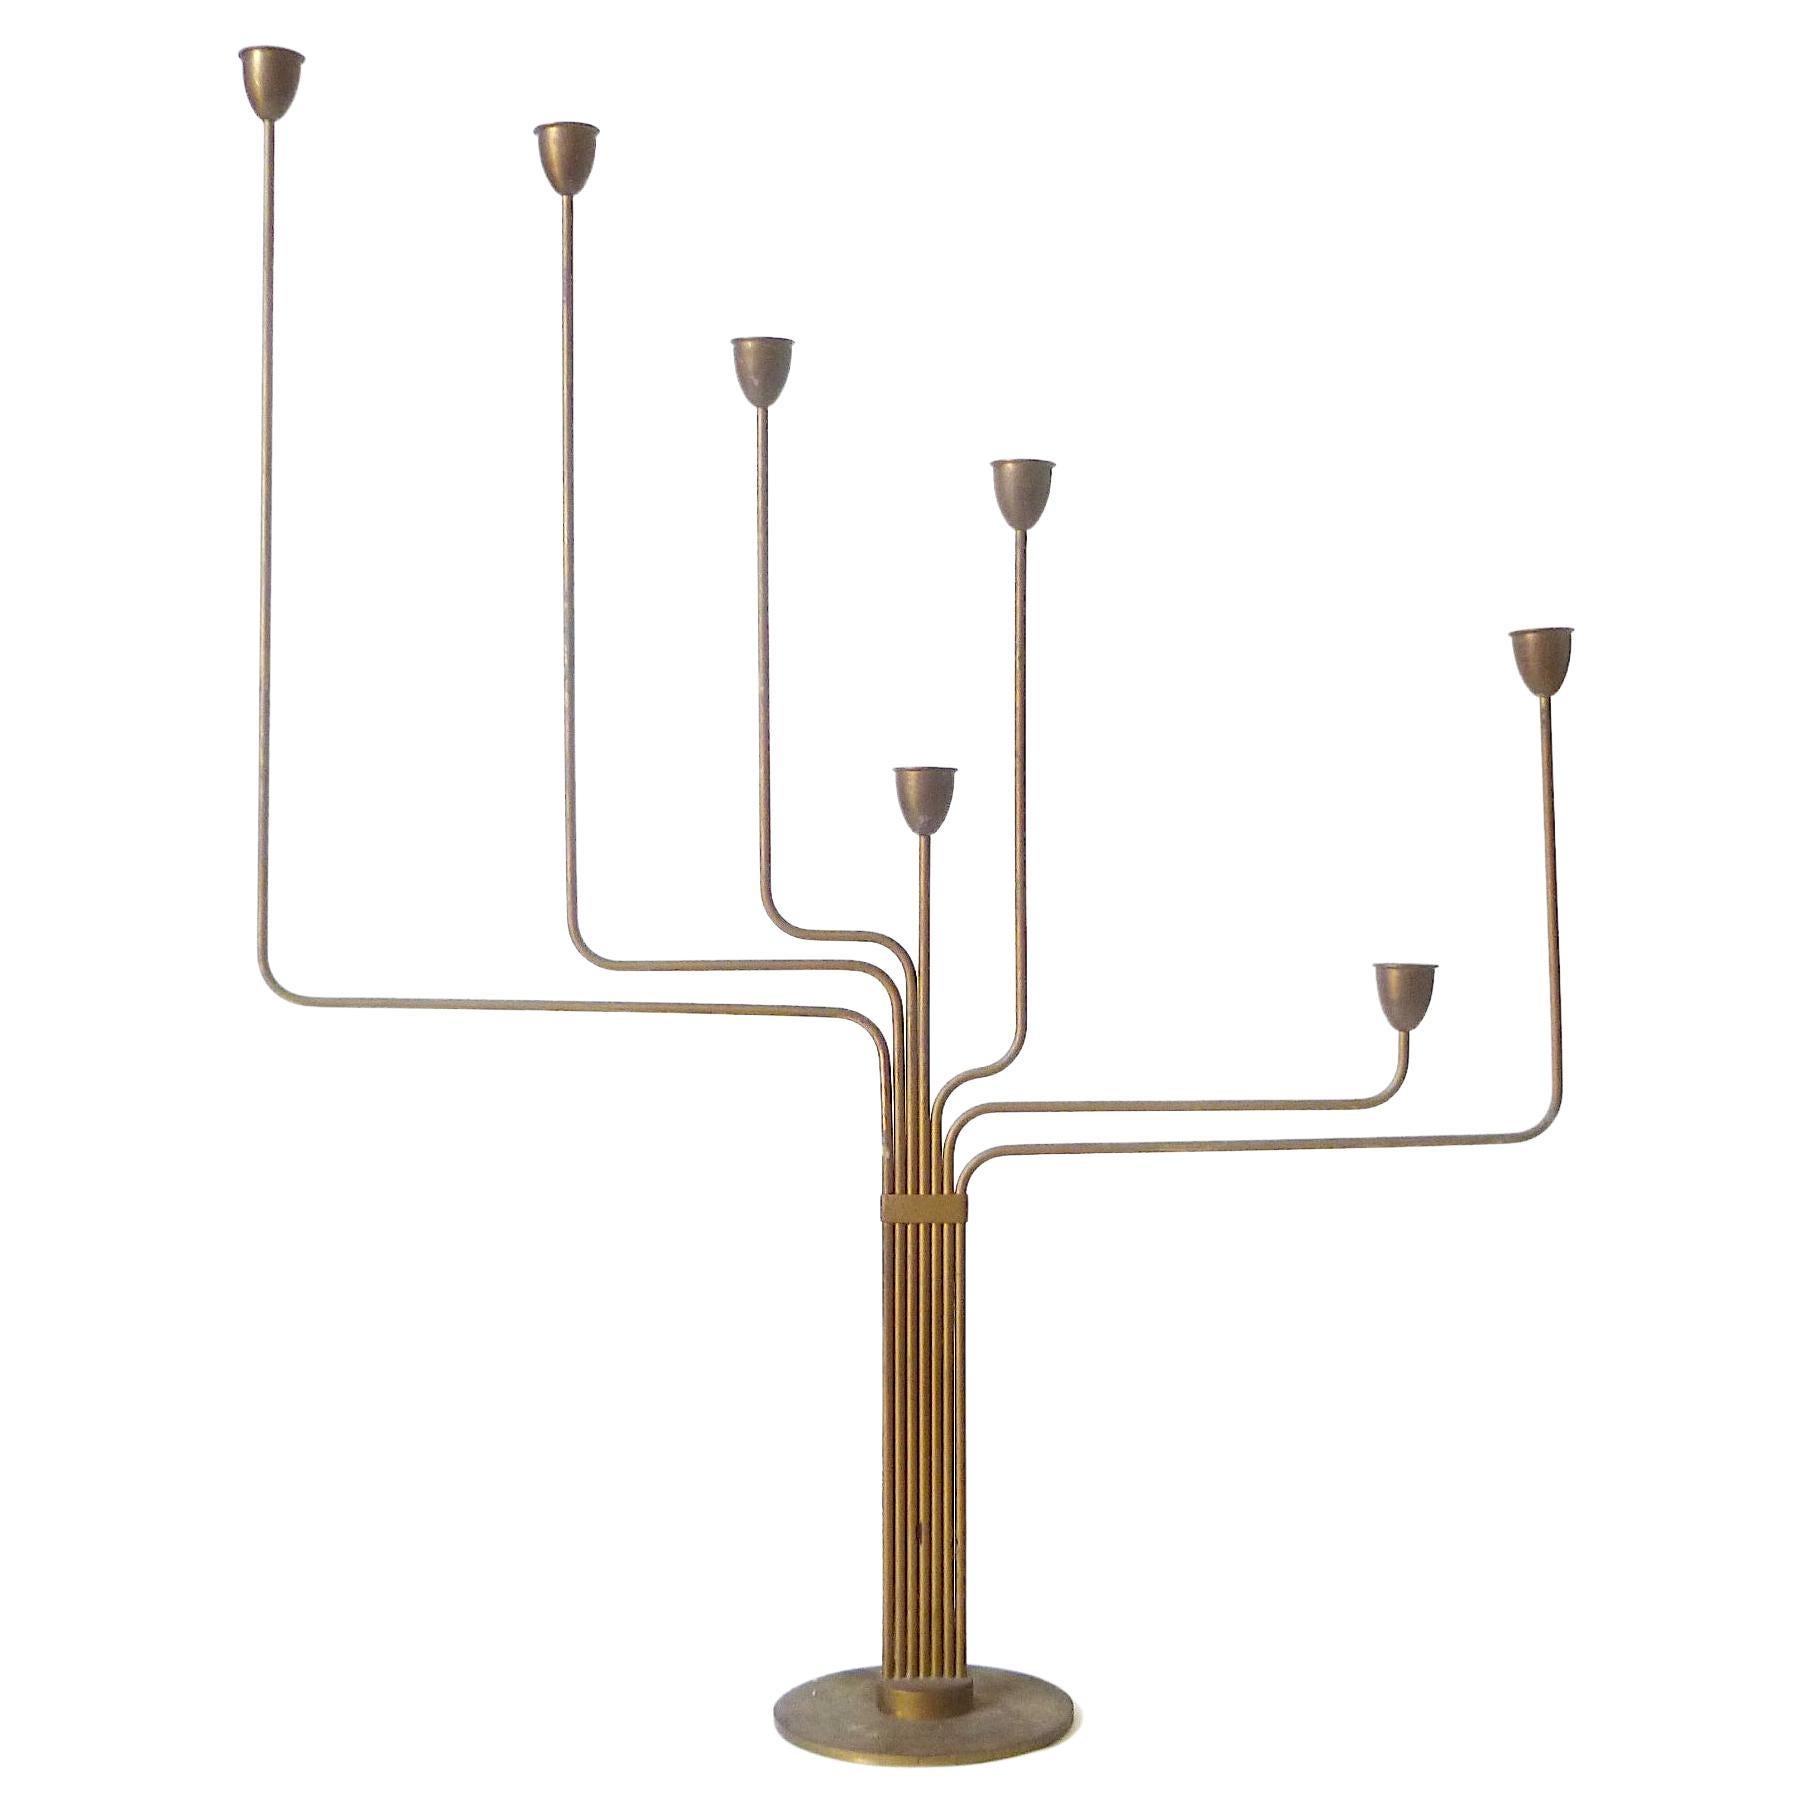 Piet Hein Ursa Major Seven-Arm Candelabrum … Danish Modern Brass Candle Holder